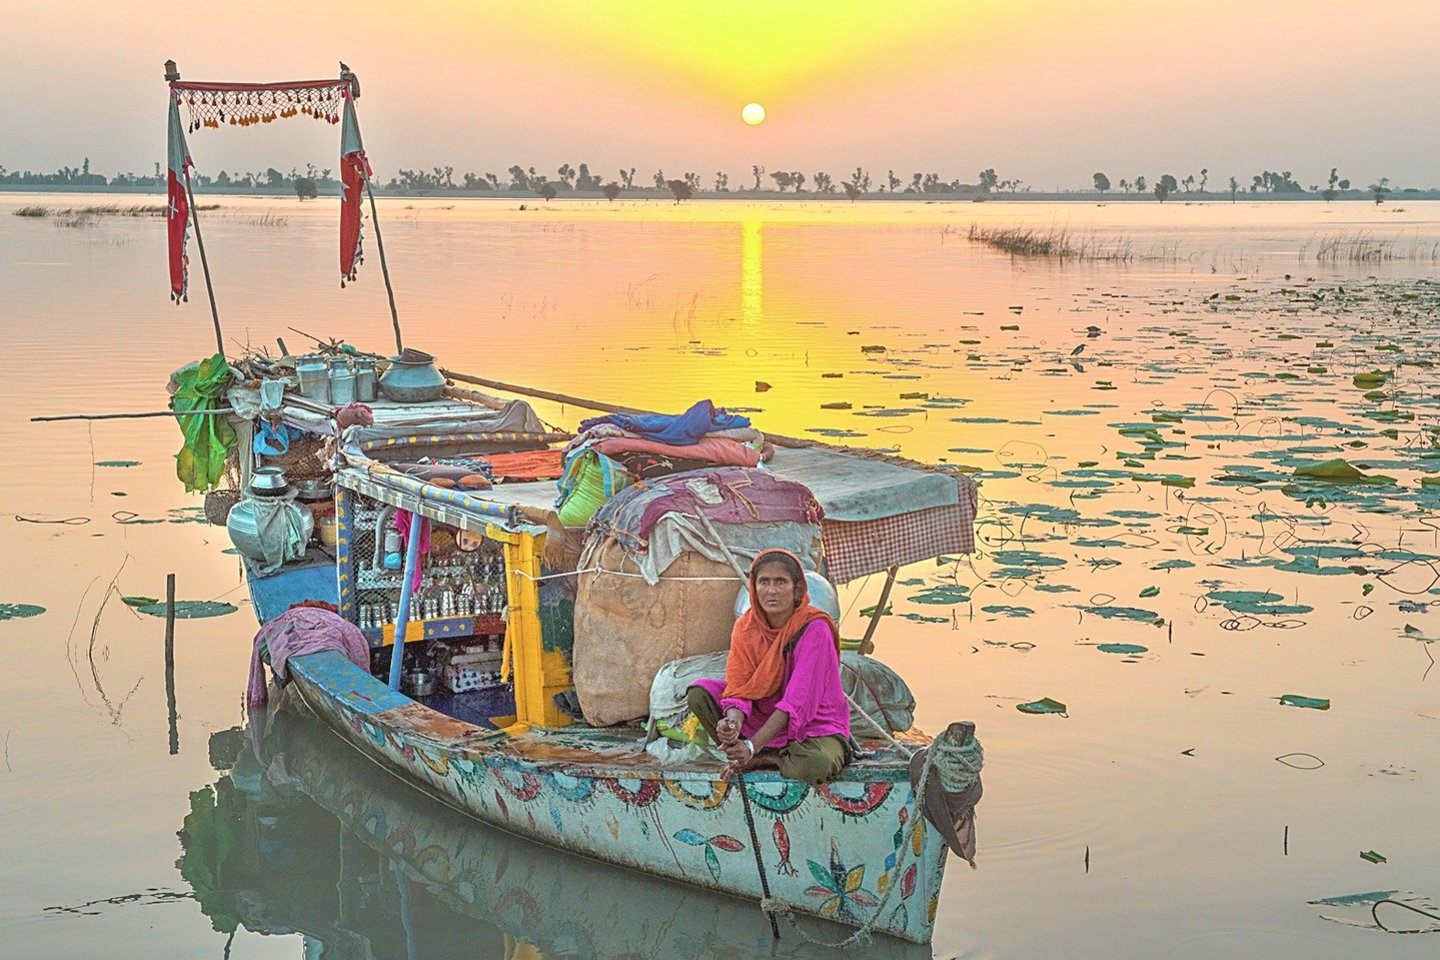 Mohanos genties žmonės gyvena savo valtyse. Tokį plaukiojantį kaimą galima išvysti tik Mančaro ežere, kuris tyvuliuoja Pakistano pietuose. Bet jei nebus pagalbos iš šalies, mohanų pasaulis dings.<br>„Wikipedia“ ir „Flickr“ nuotr.